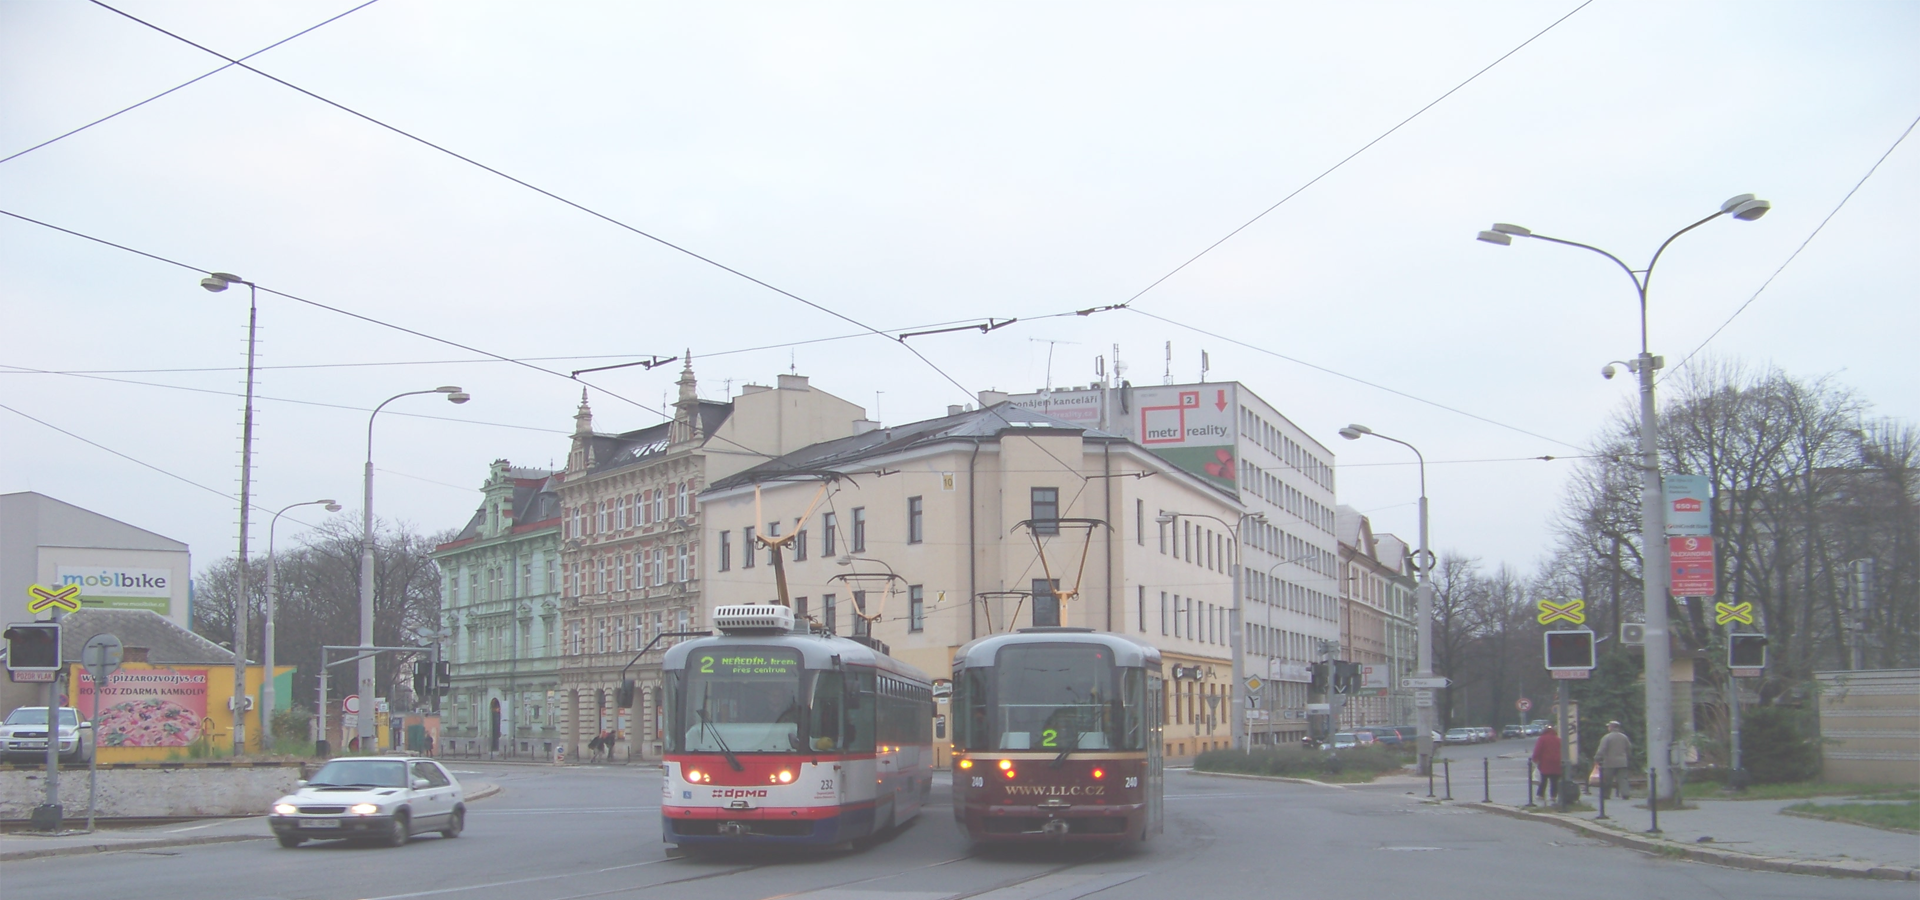 <b>Olomouc, Olomouc Region, Czech Republic</b>